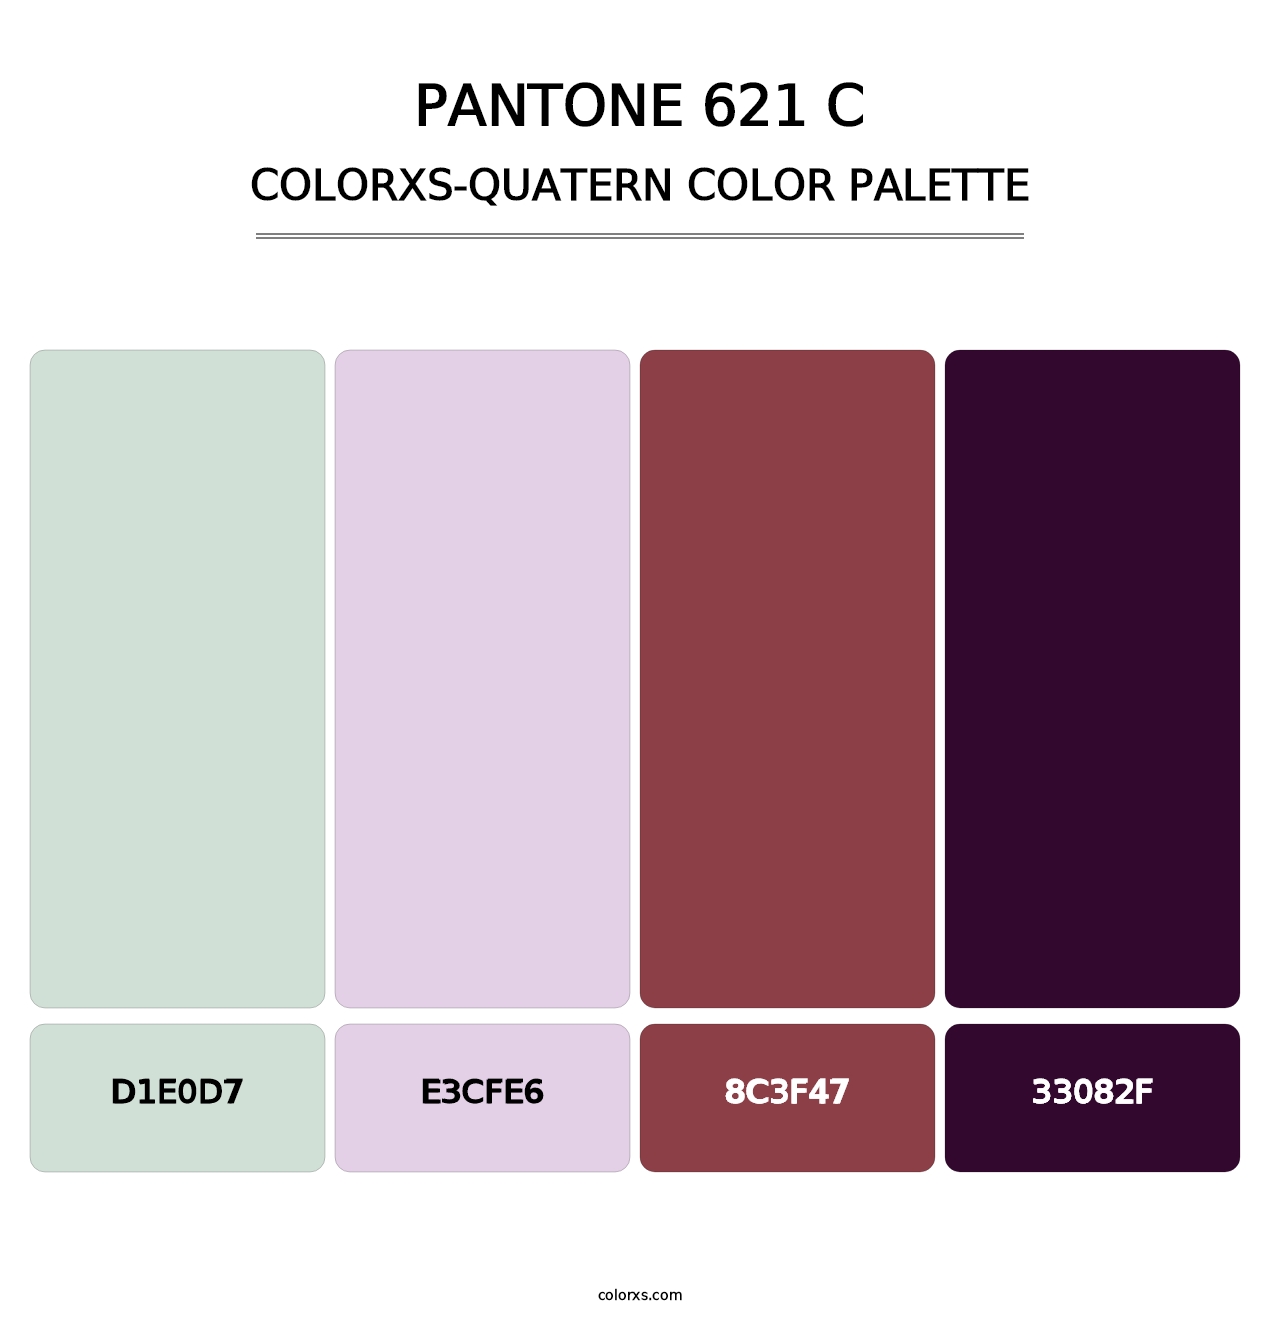 PANTONE 621 C - Colorxs Quatern Palette